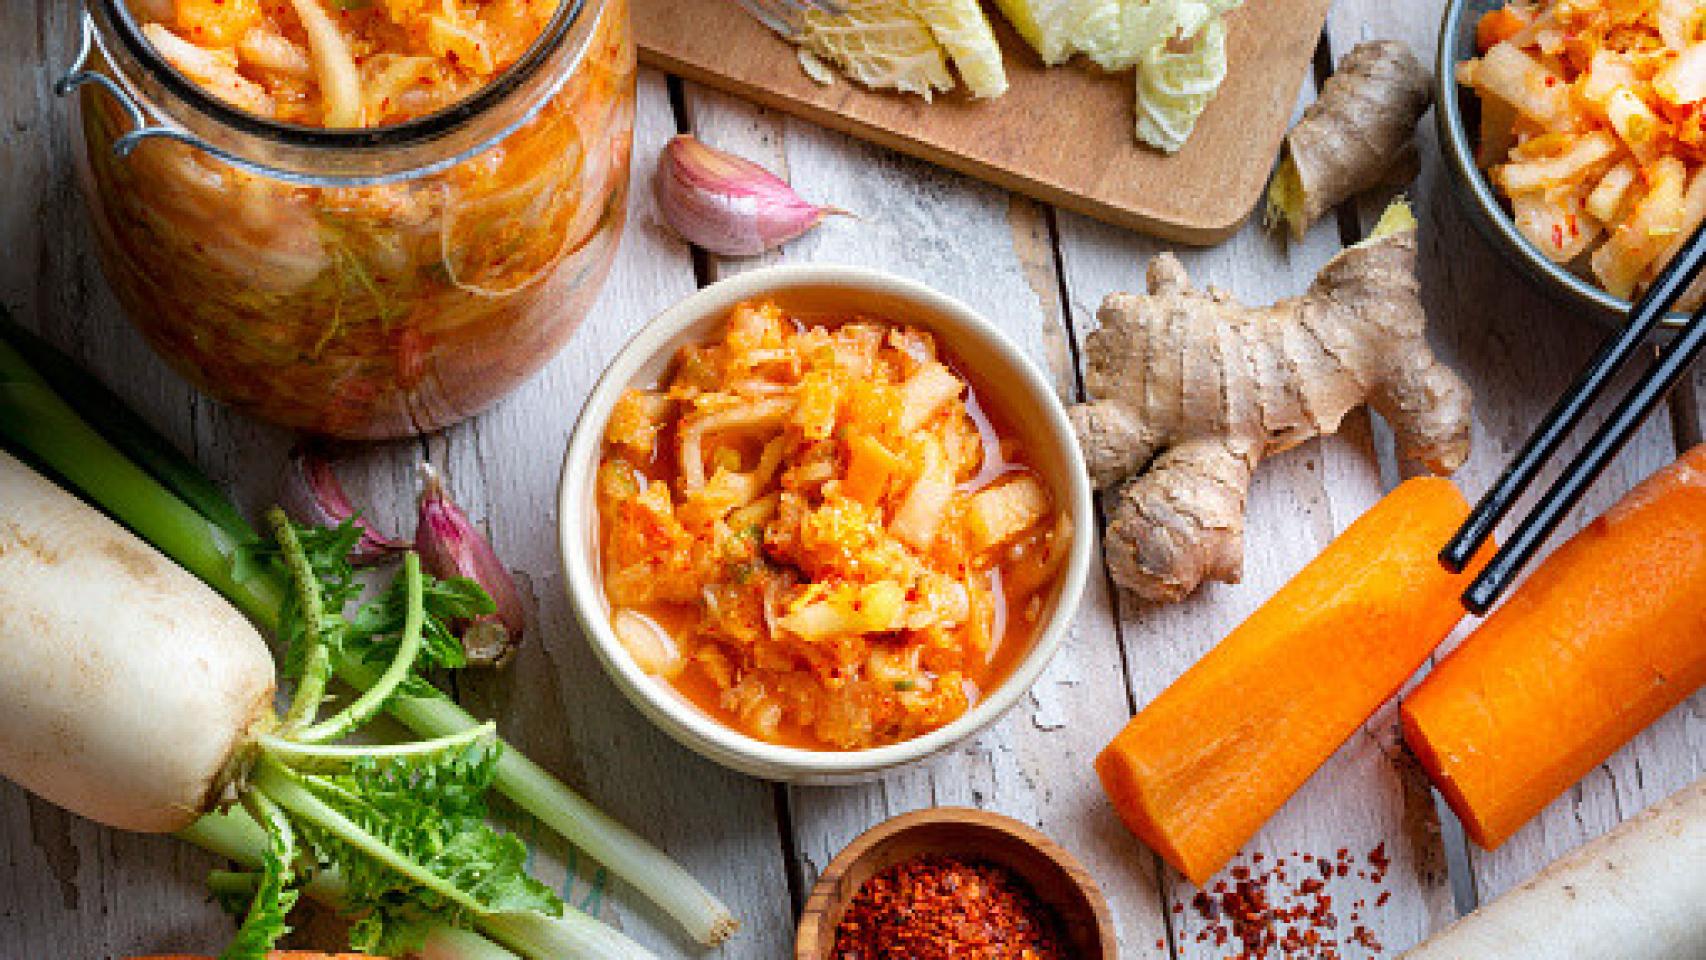 El kimchi, el plato nacional de Corea, tiene numerosos beneficios para la salud.